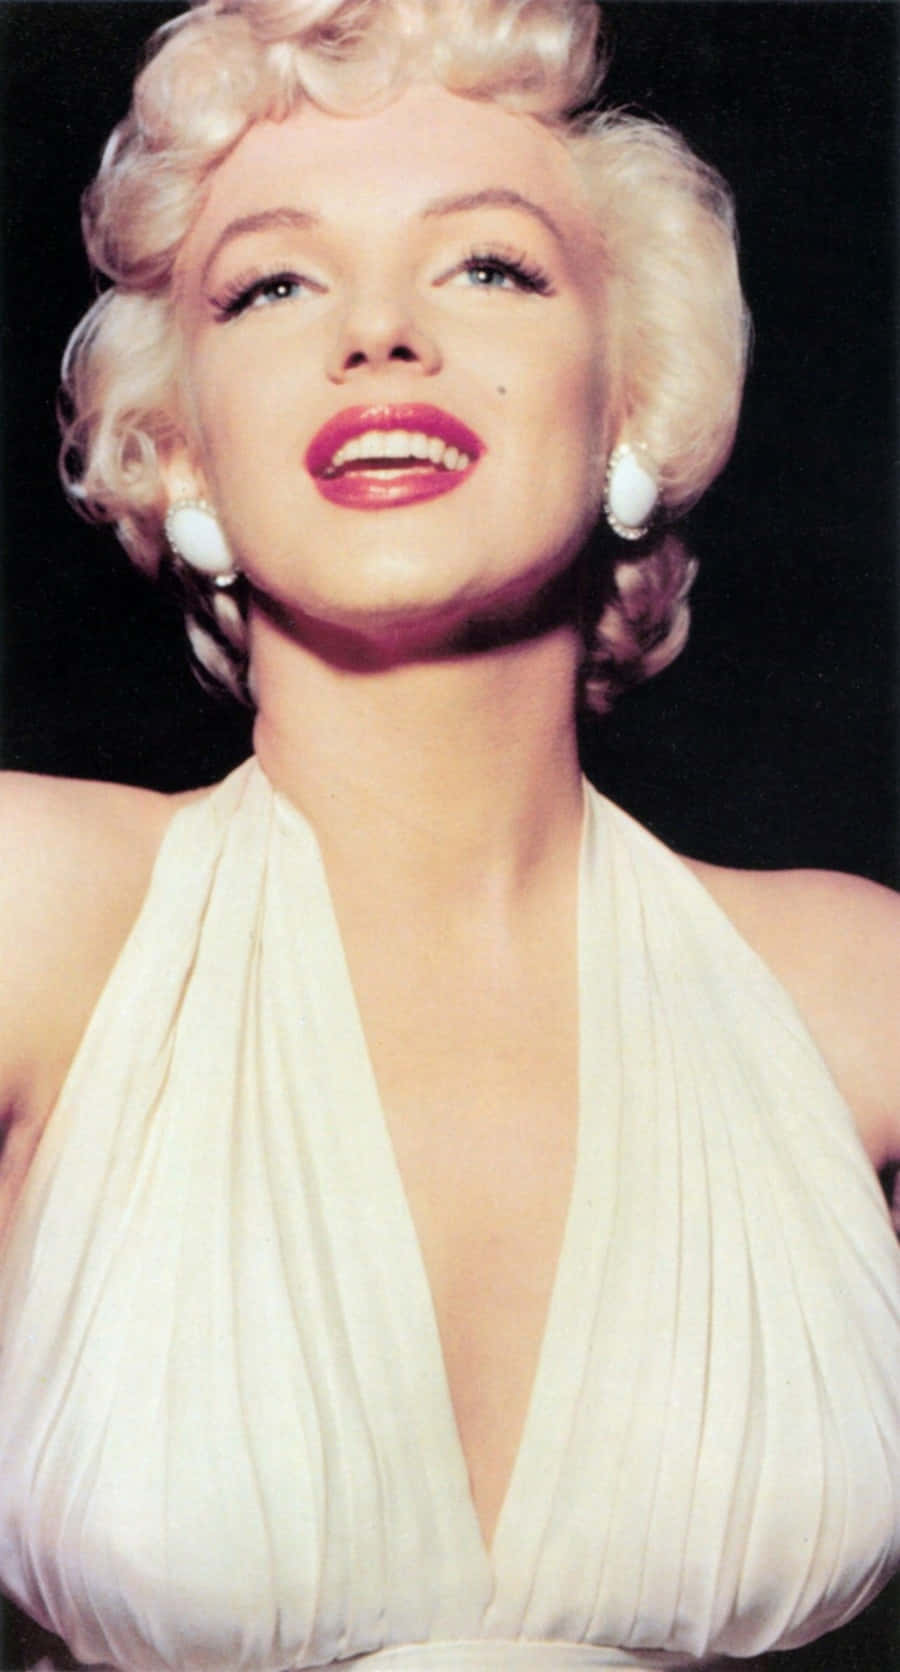 Leggendariaattrice E Iconico Simbolo Di Seduzione Marilyn Monroe